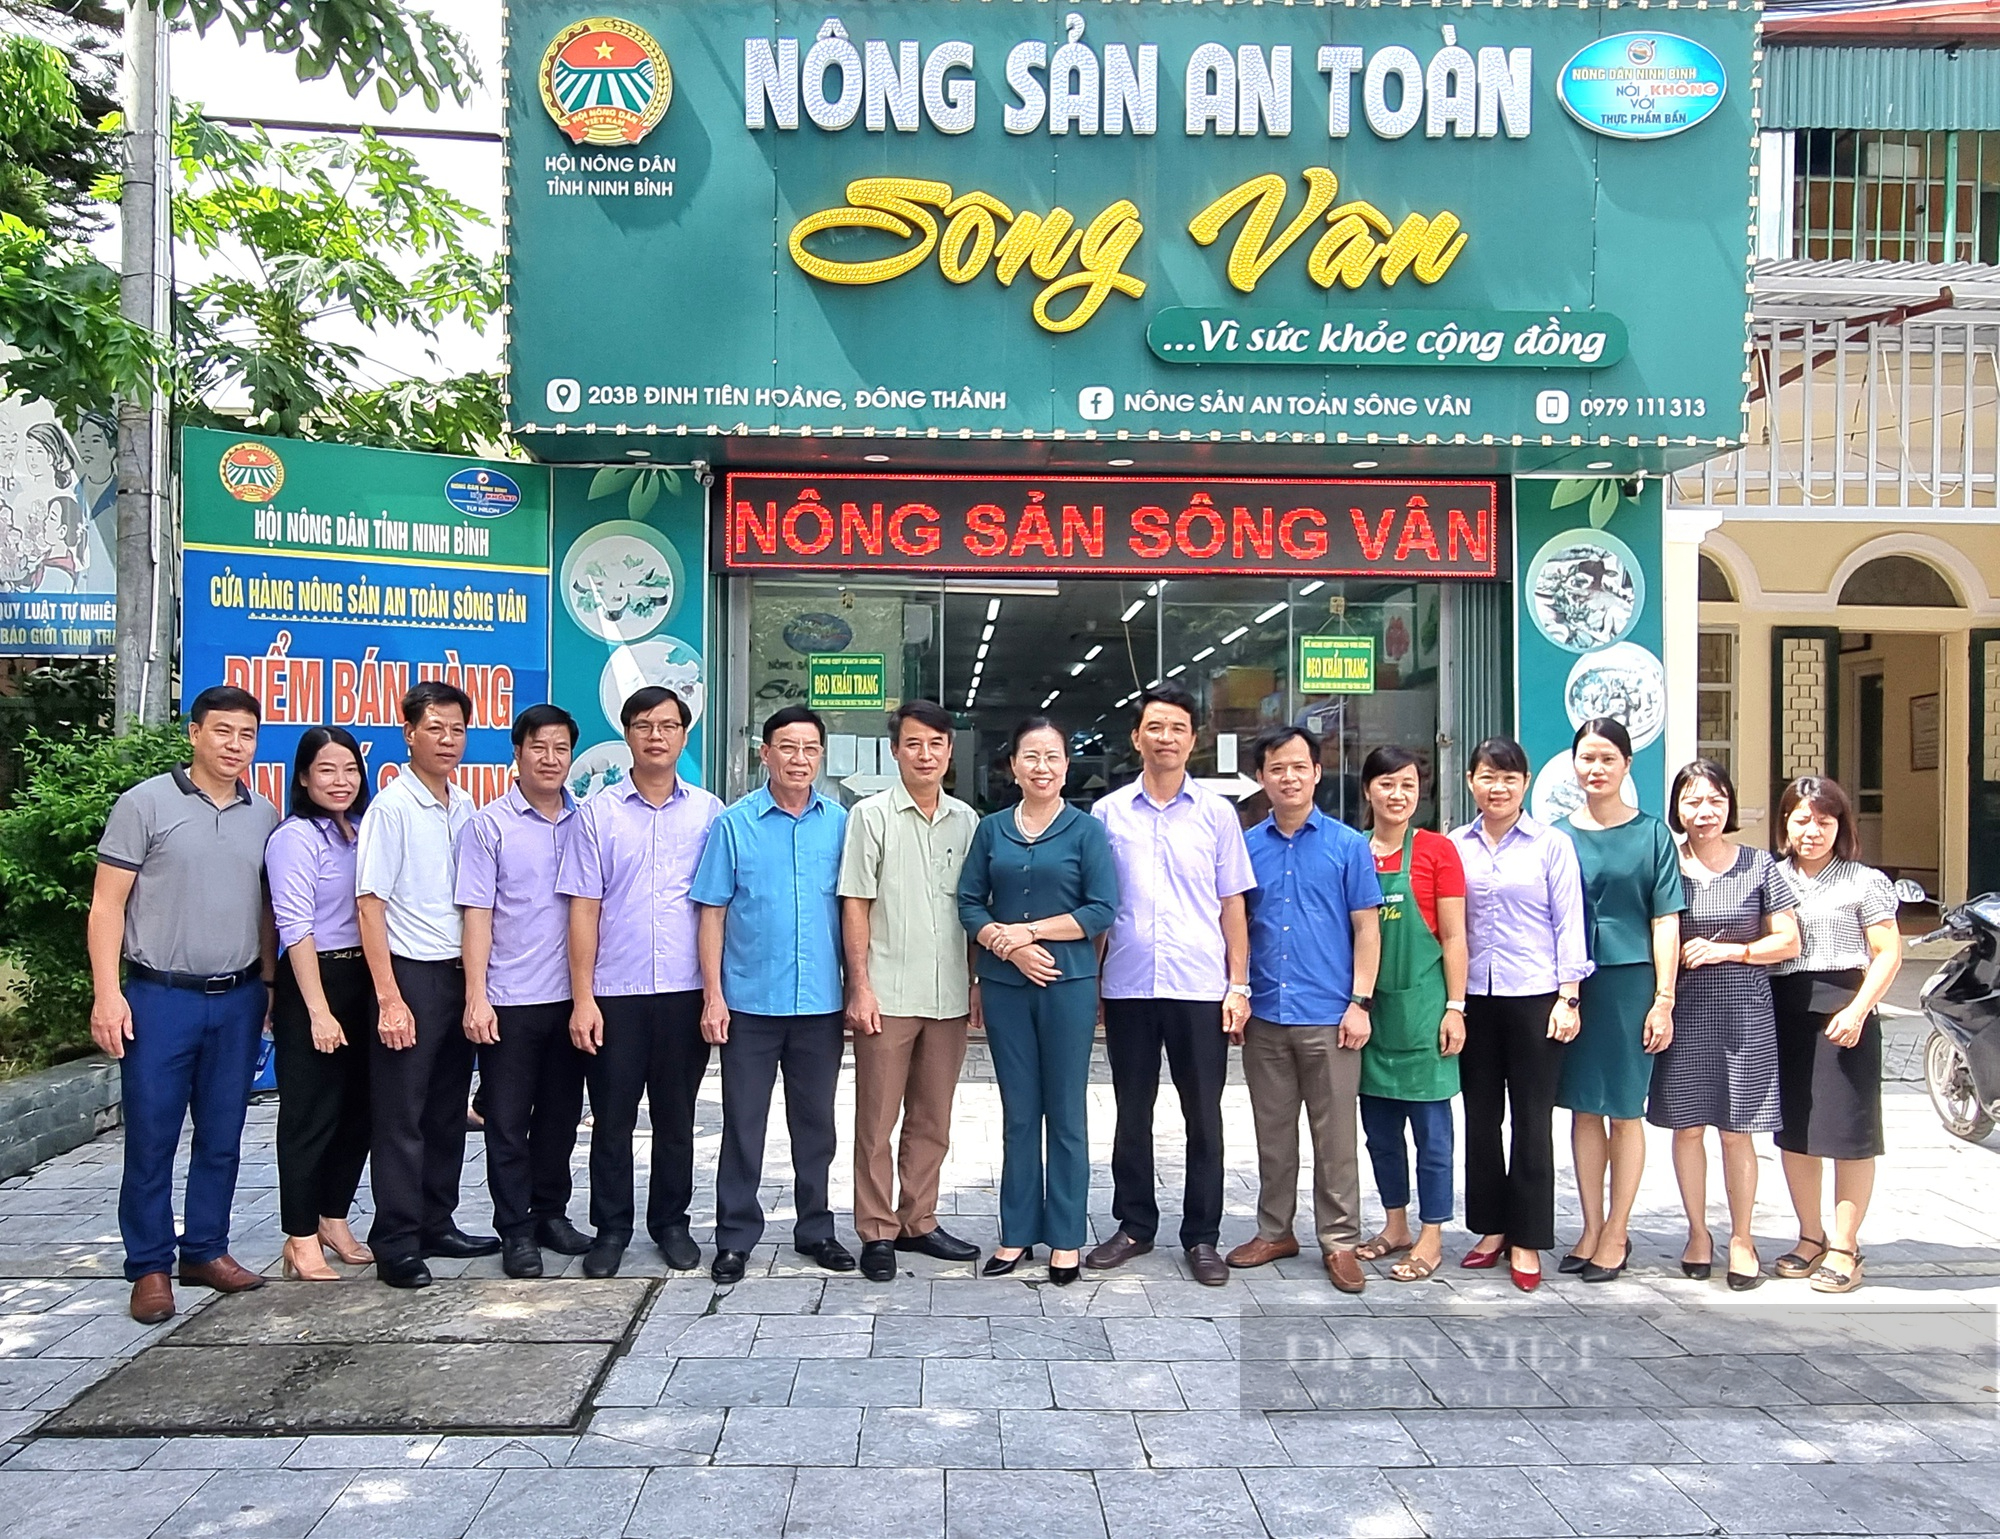 Phó Chủ tịch Hội NDVN Bùi Thị Thơm ấn tượng với cửa hàng nông sản an toàn Sông Vân ở Ninh Bình- Ảnh 4.